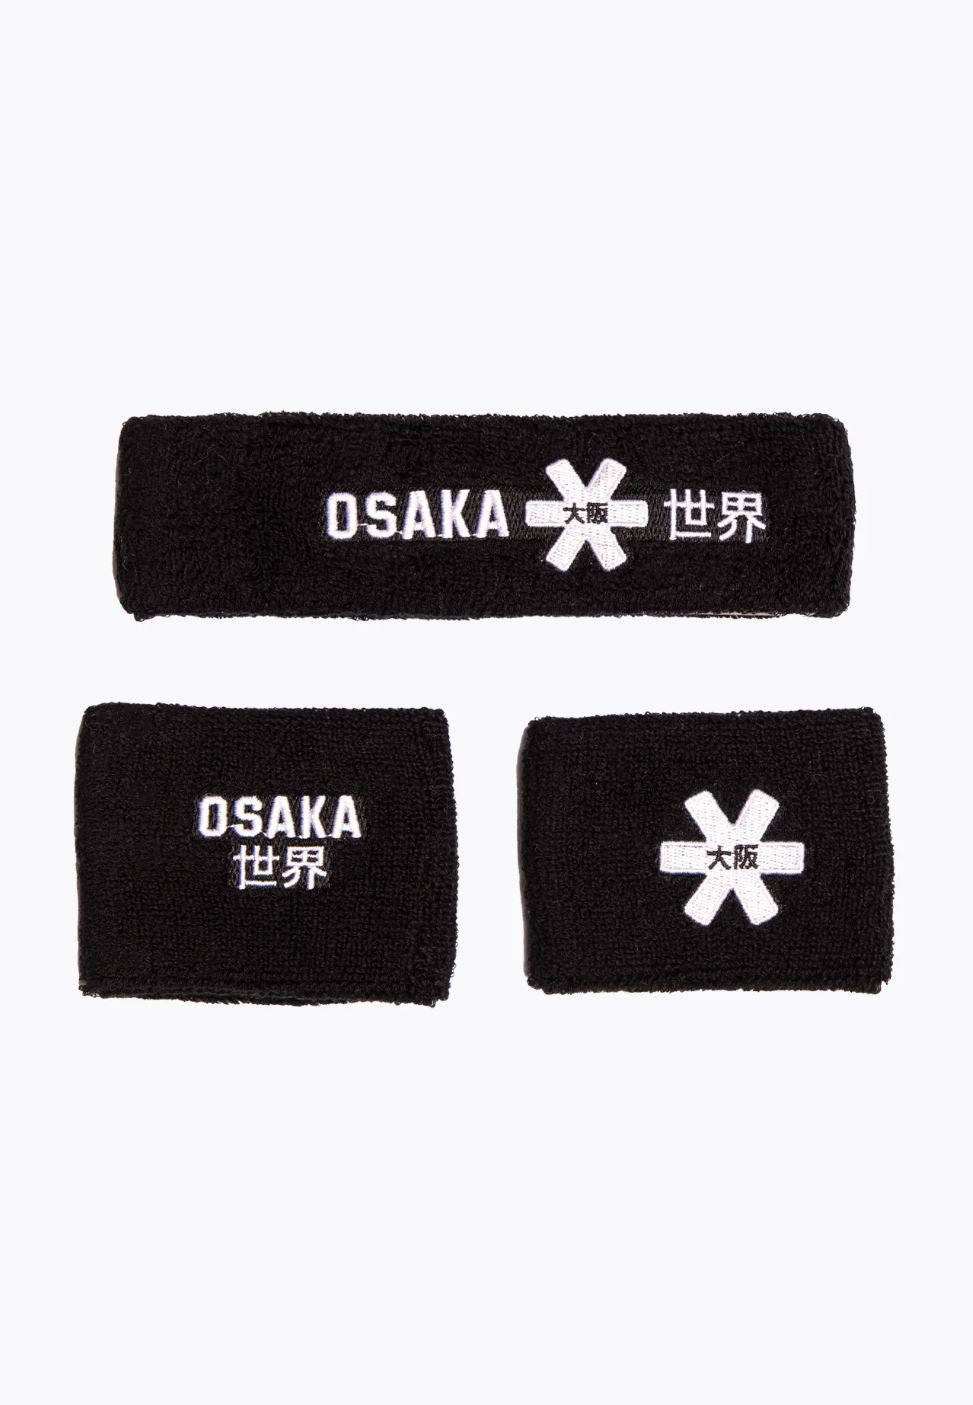 Osaka Sweatband Set (Black)